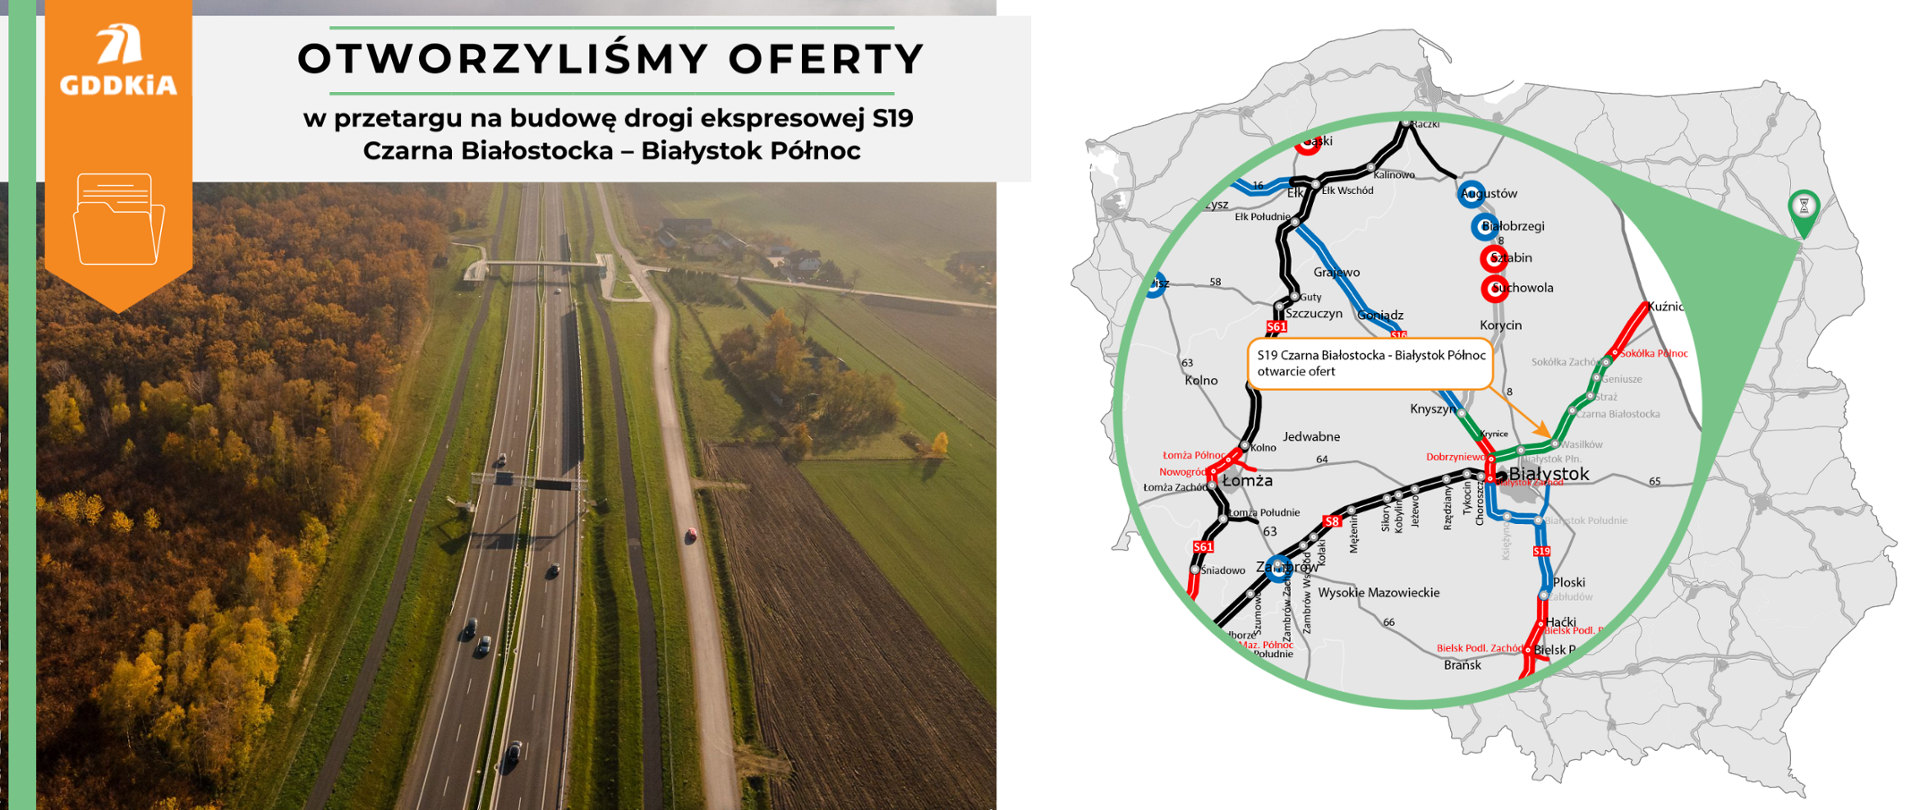 Infografika informująca o otwarciu ofert w przetargu na budowę drogi ekspresowej S19 Czarna Białostocka – Białystok Północ. Po prawej kontur mapy Polski z zaznaczonym odcinkiem, którego dotyczy otwarcie. Po lewej zdjęcie drogi ekspresowej S19 w okolicach Kraśnika. Dwujezdniowa droga ekspresowa o 2 pasach ruchu w każdą stronę biegnie przez tereny zielone. Po lewej stronie drogi las w jesiennych barwach.